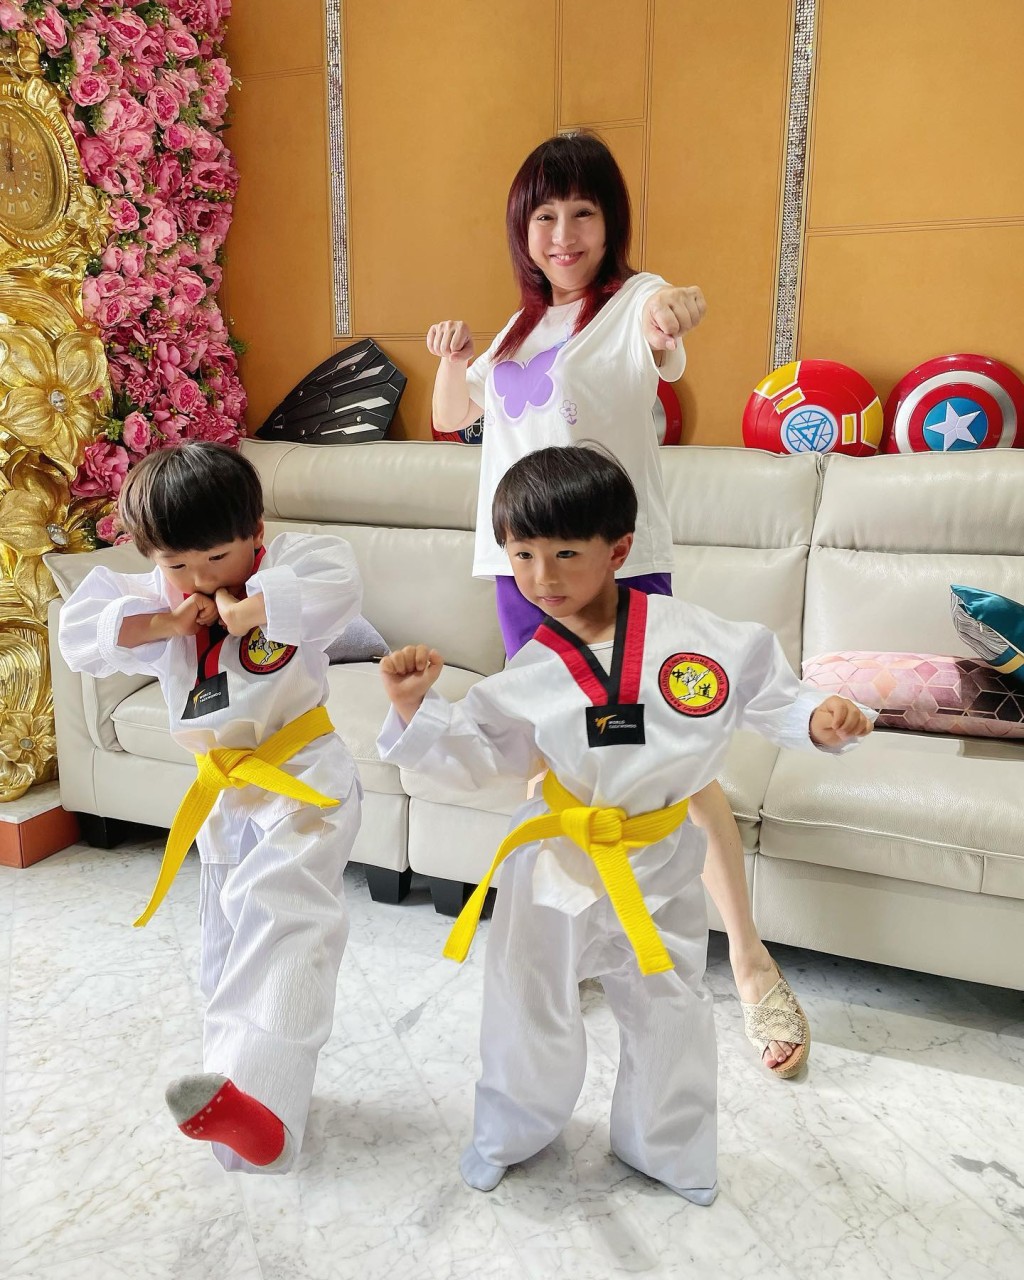 梅小青的孙仔似乎学跆拳道。